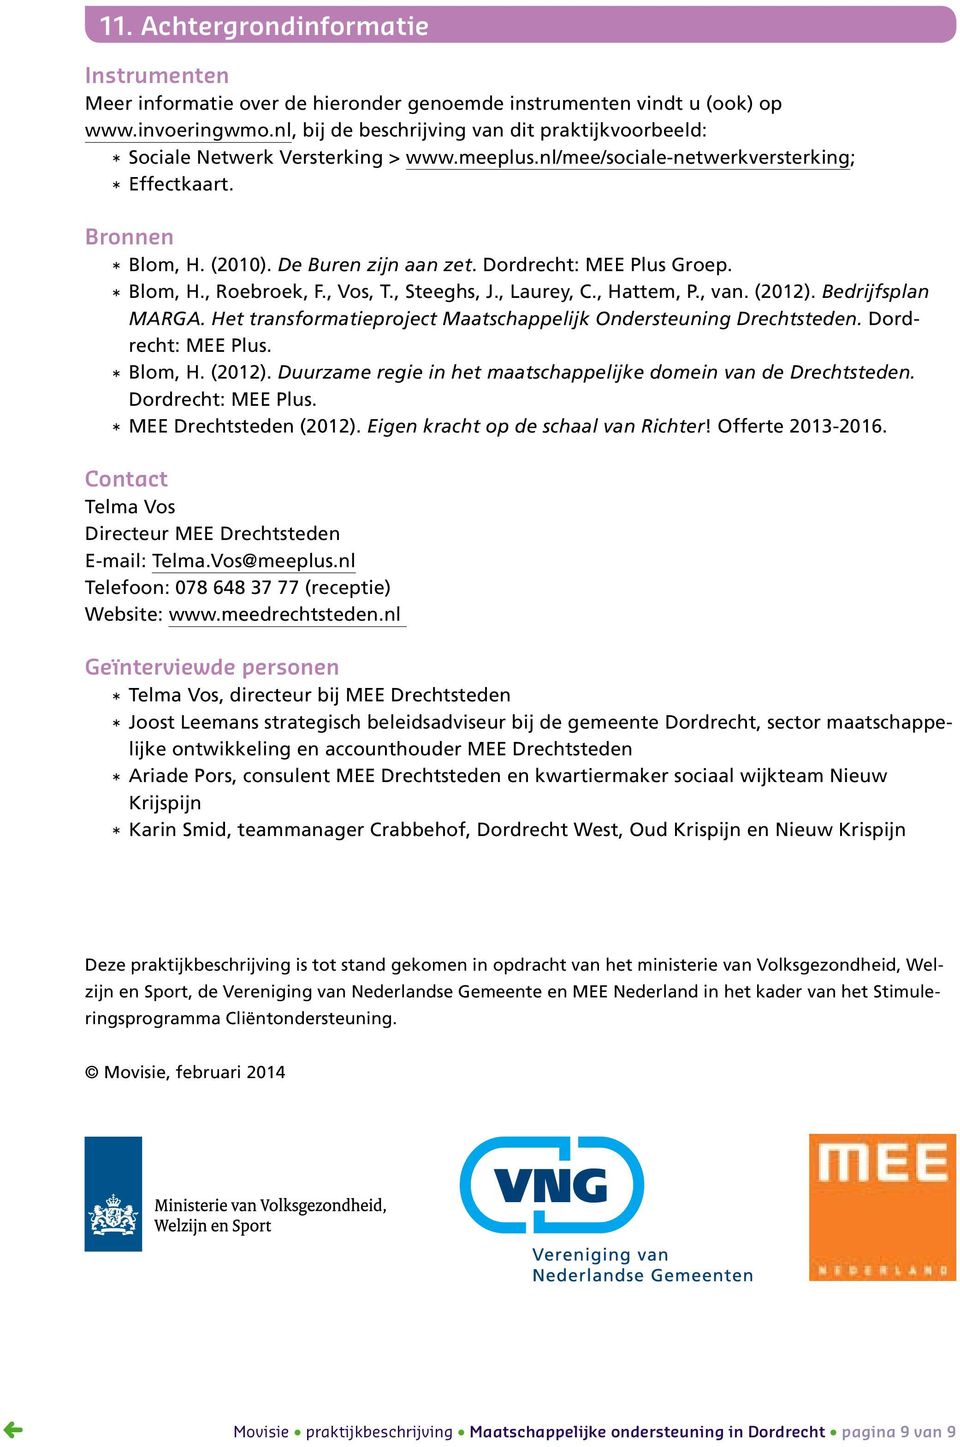 Dordrecht: MEE Plus Groep. * Blom, H., Roebroek, F., Vos, T., Steeghs, J., Laurey, C., Hattem, P., van. (2012). Bedrijfsplan MARGA. Het transformatieproject Maatschappelijk Ondersteuning Drechtsteden.